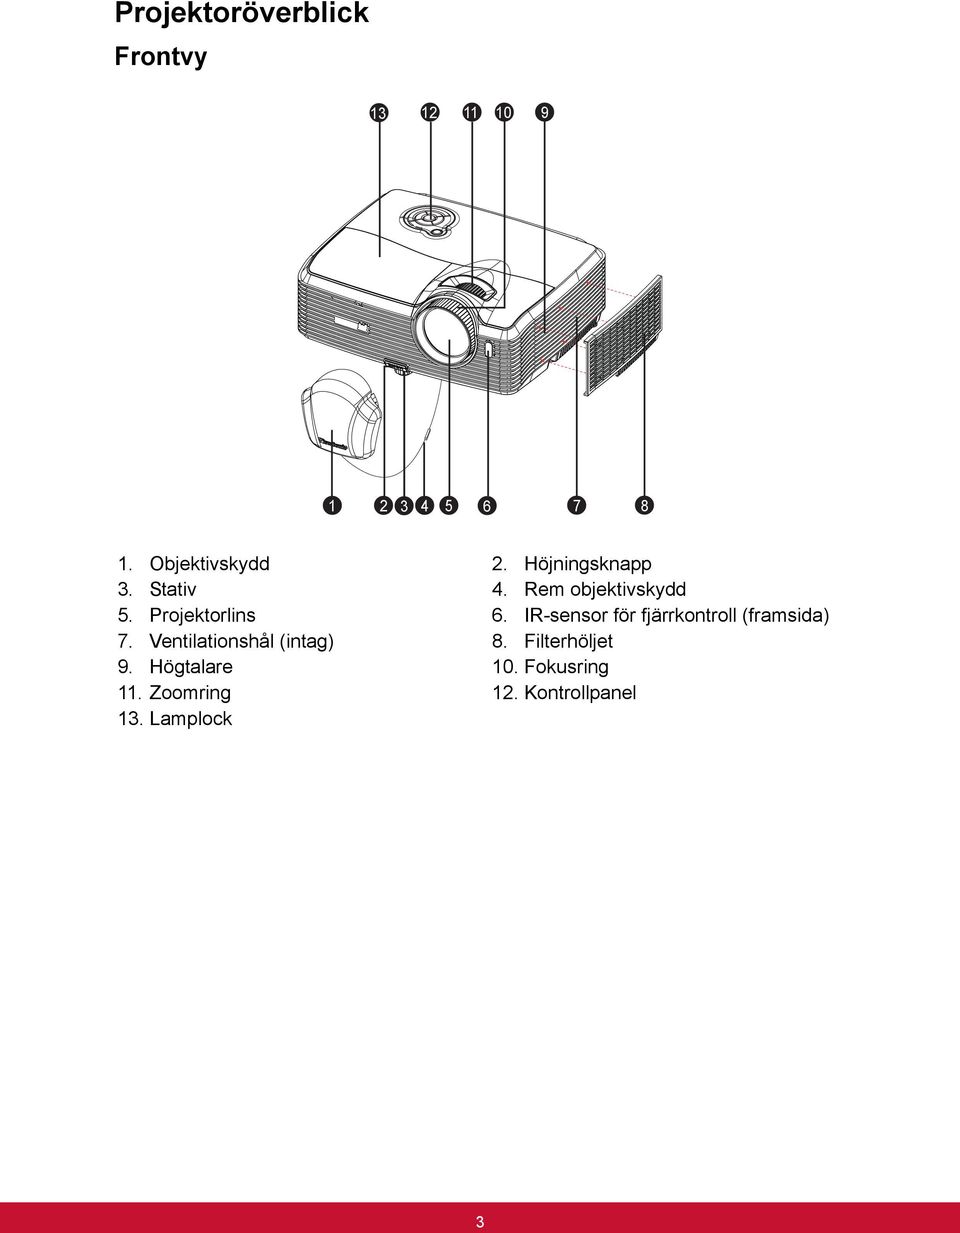 Projektorlins 6. IR-sensor för fjärrkontroll (framsida) 7.